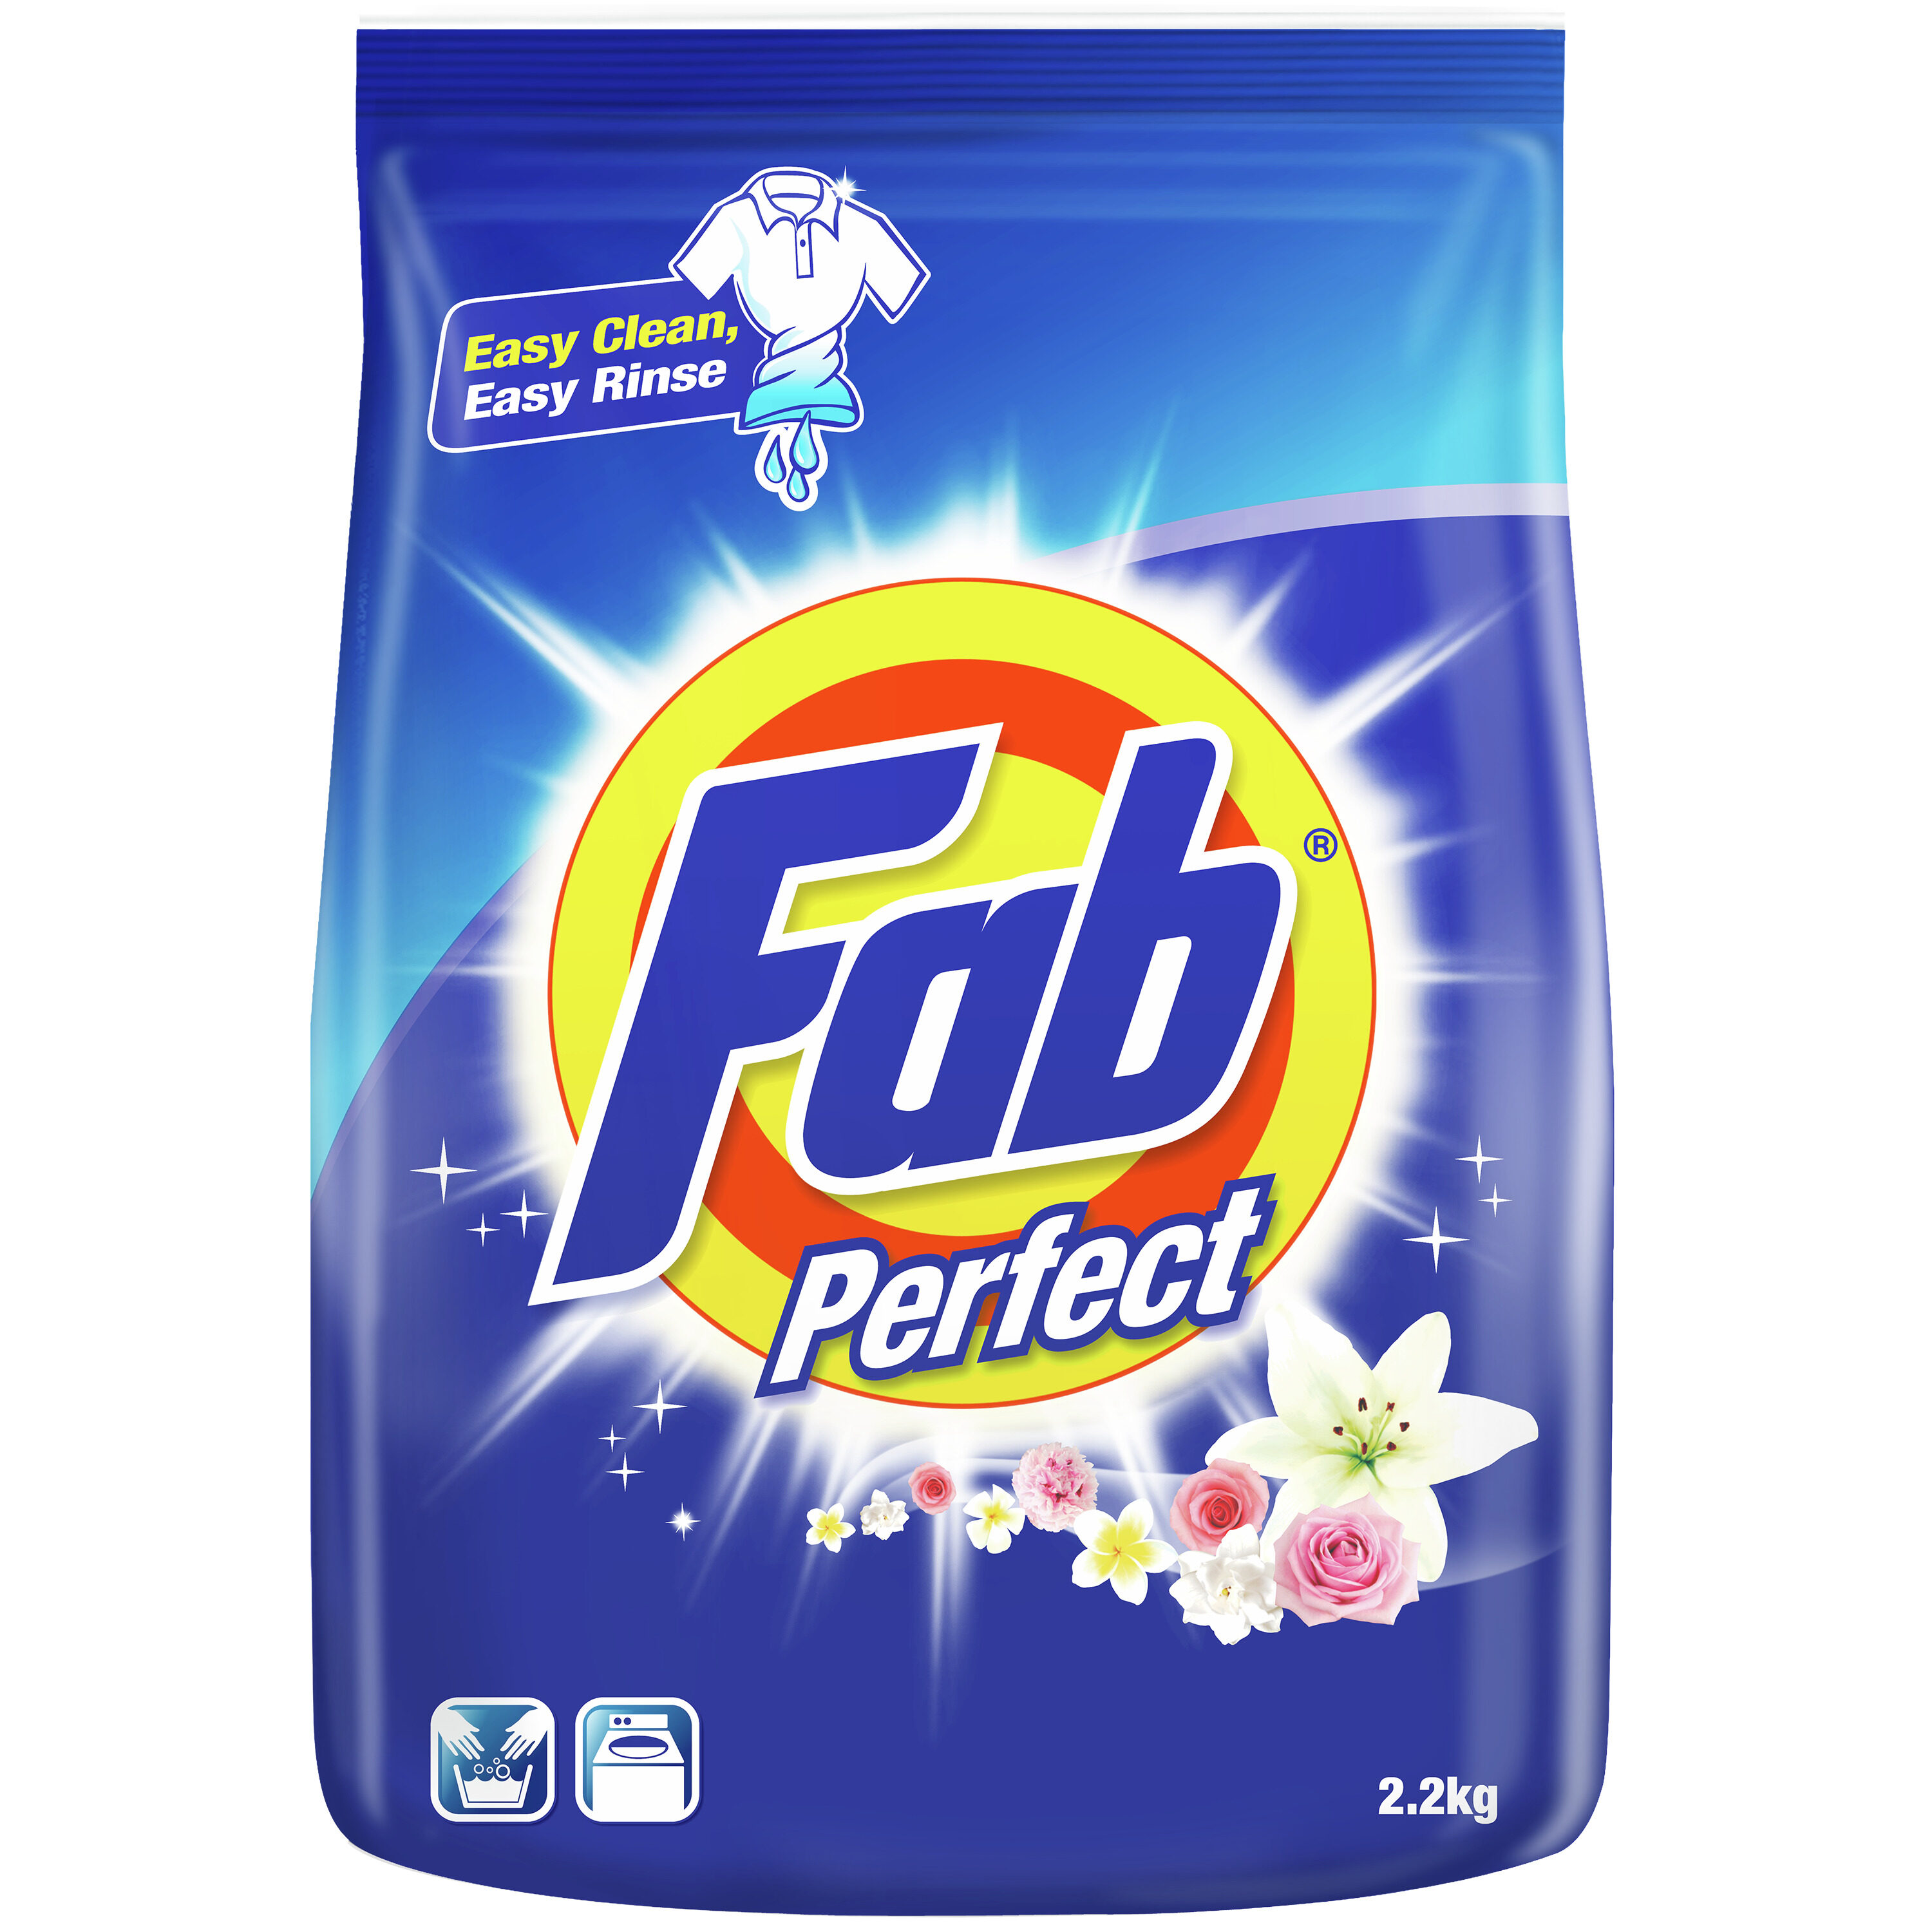 Fab Powder Detergent Perfect 2.2kg